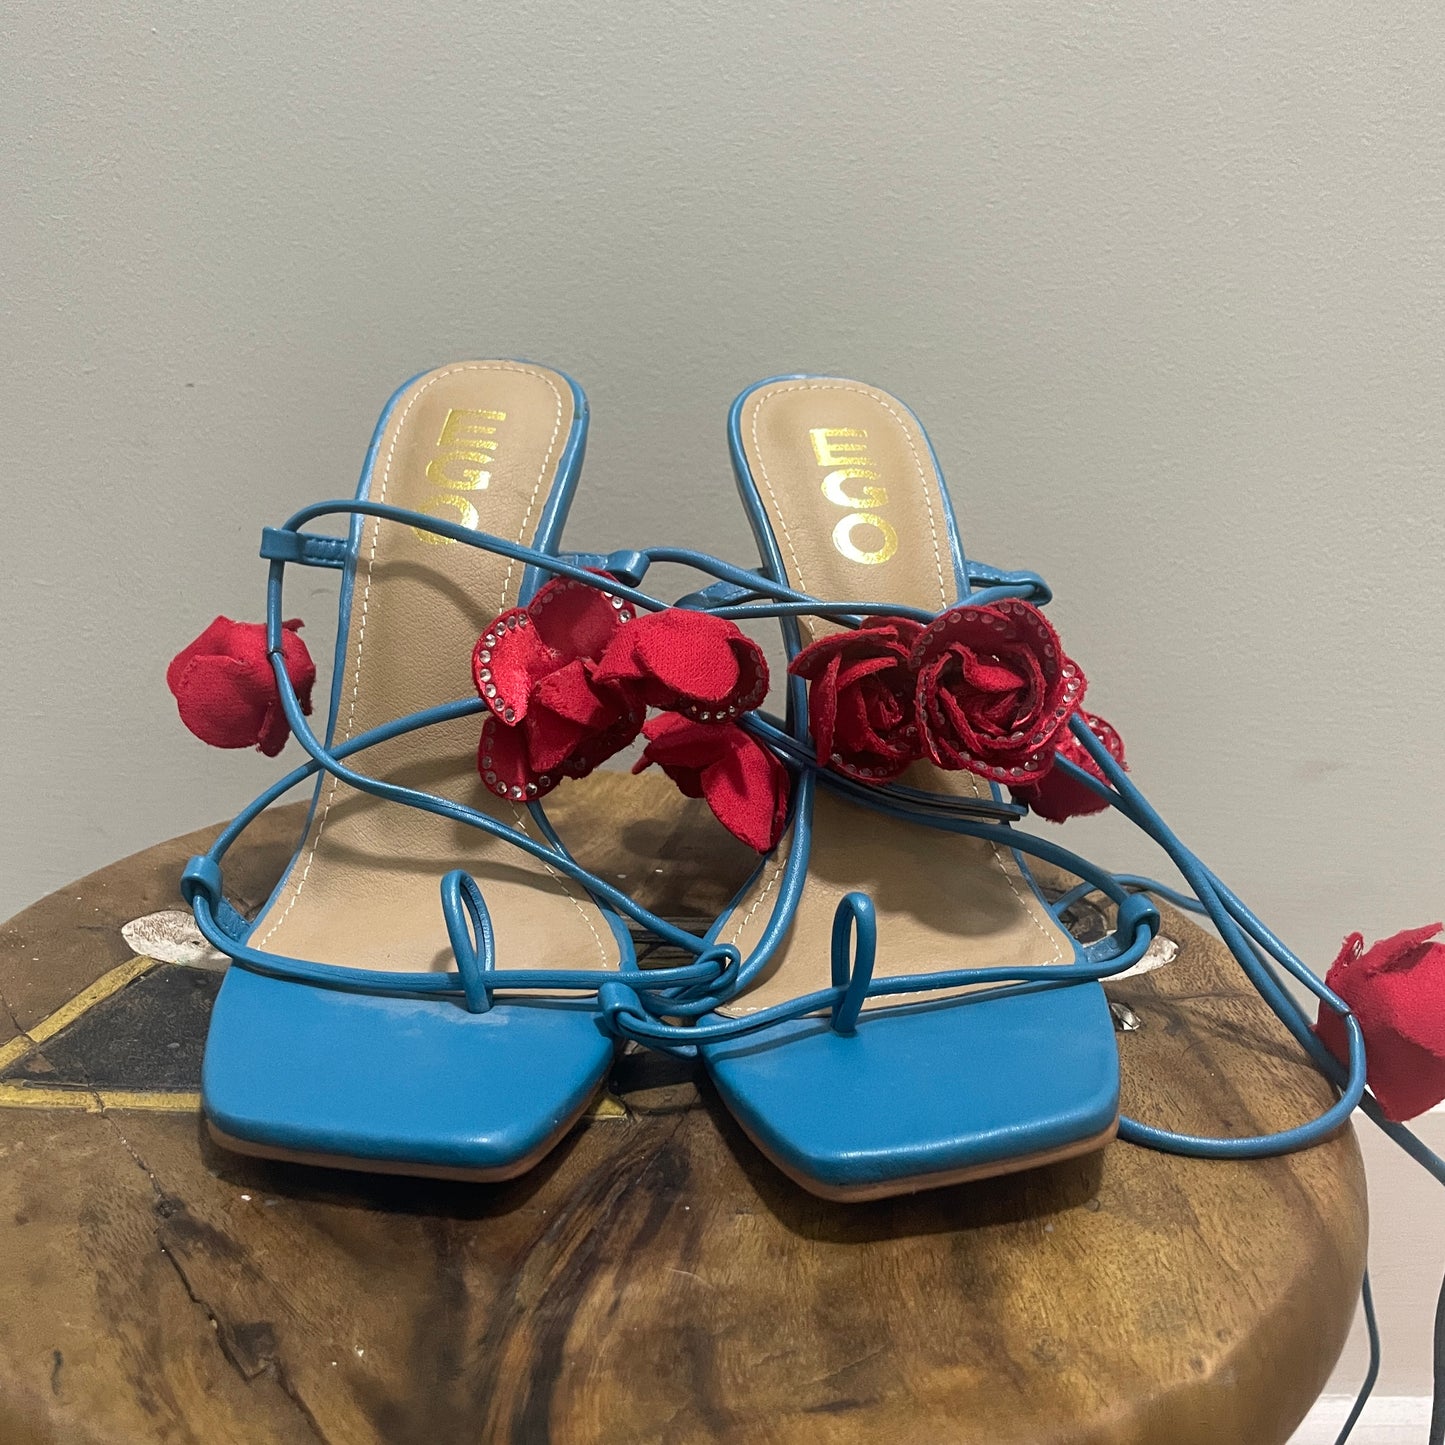 Flower sandals